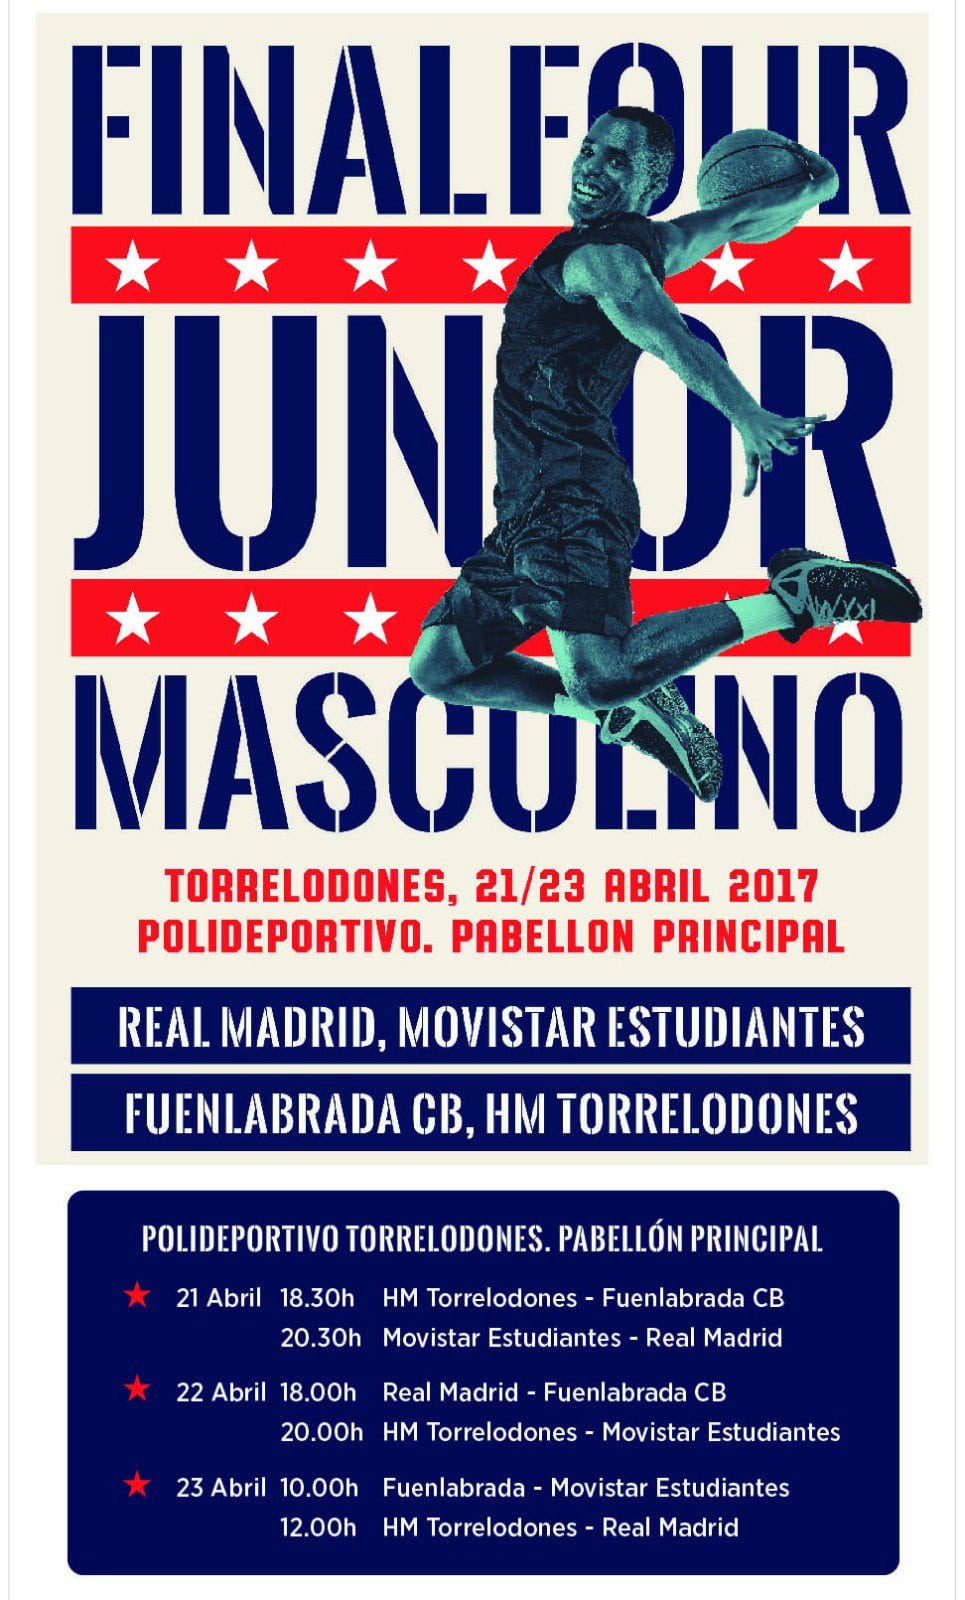 Fase Final Junior Masculino de Madrid: 21 al 23 de abril, Torrelodones